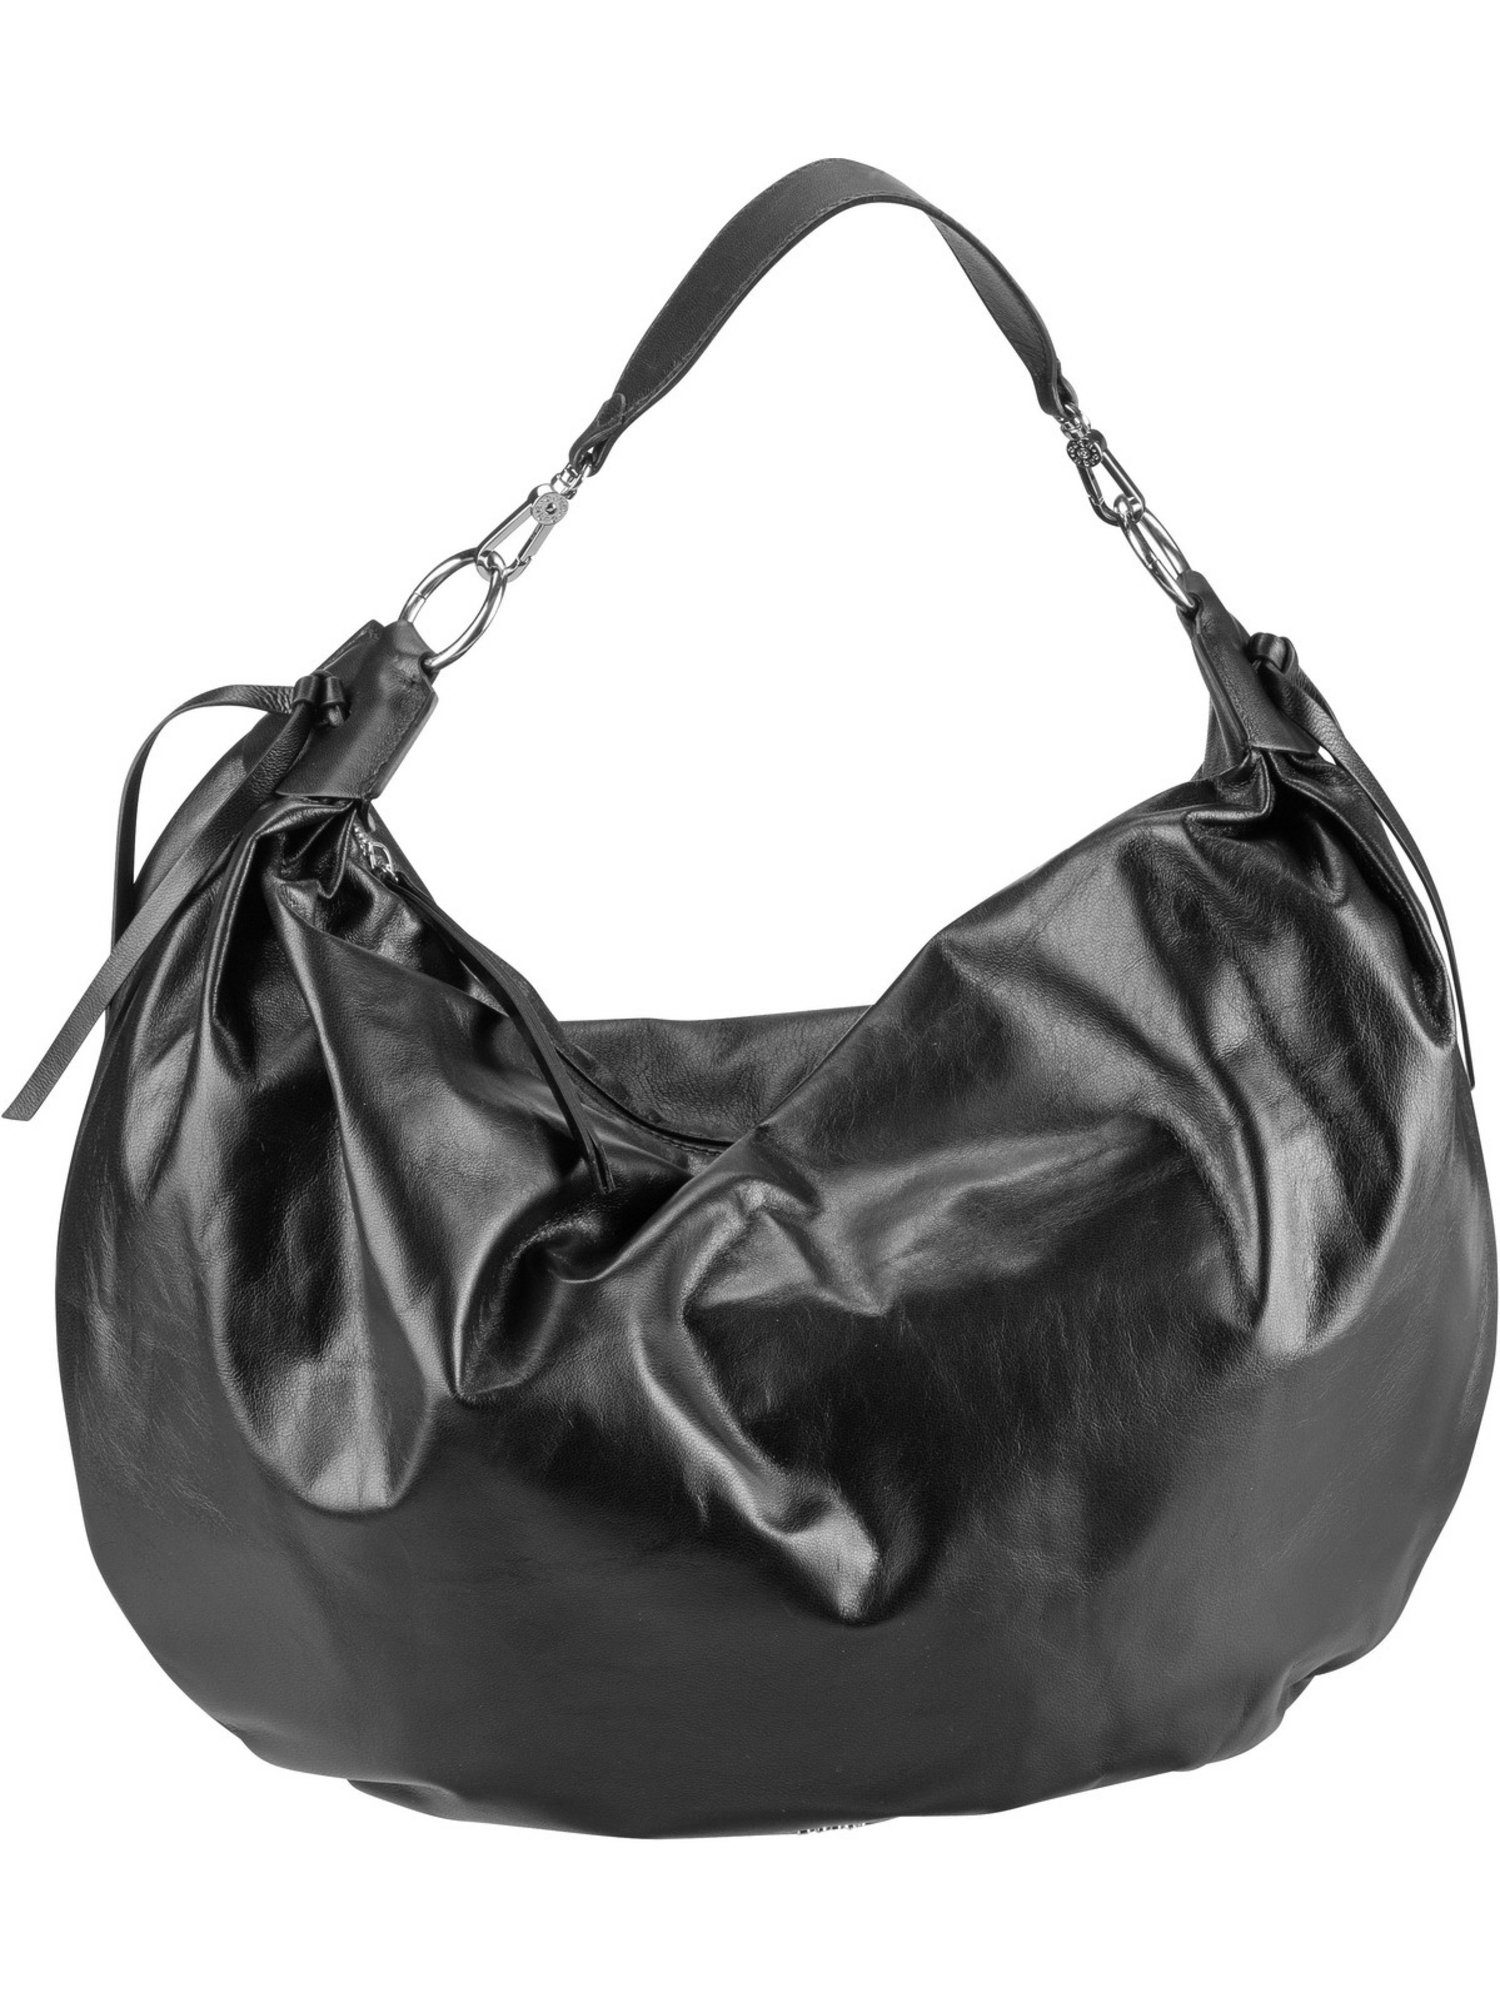 Abro Handtasche »Anita 29530«, Beuteltasche / Hobo Bag online kaufen | OTTO